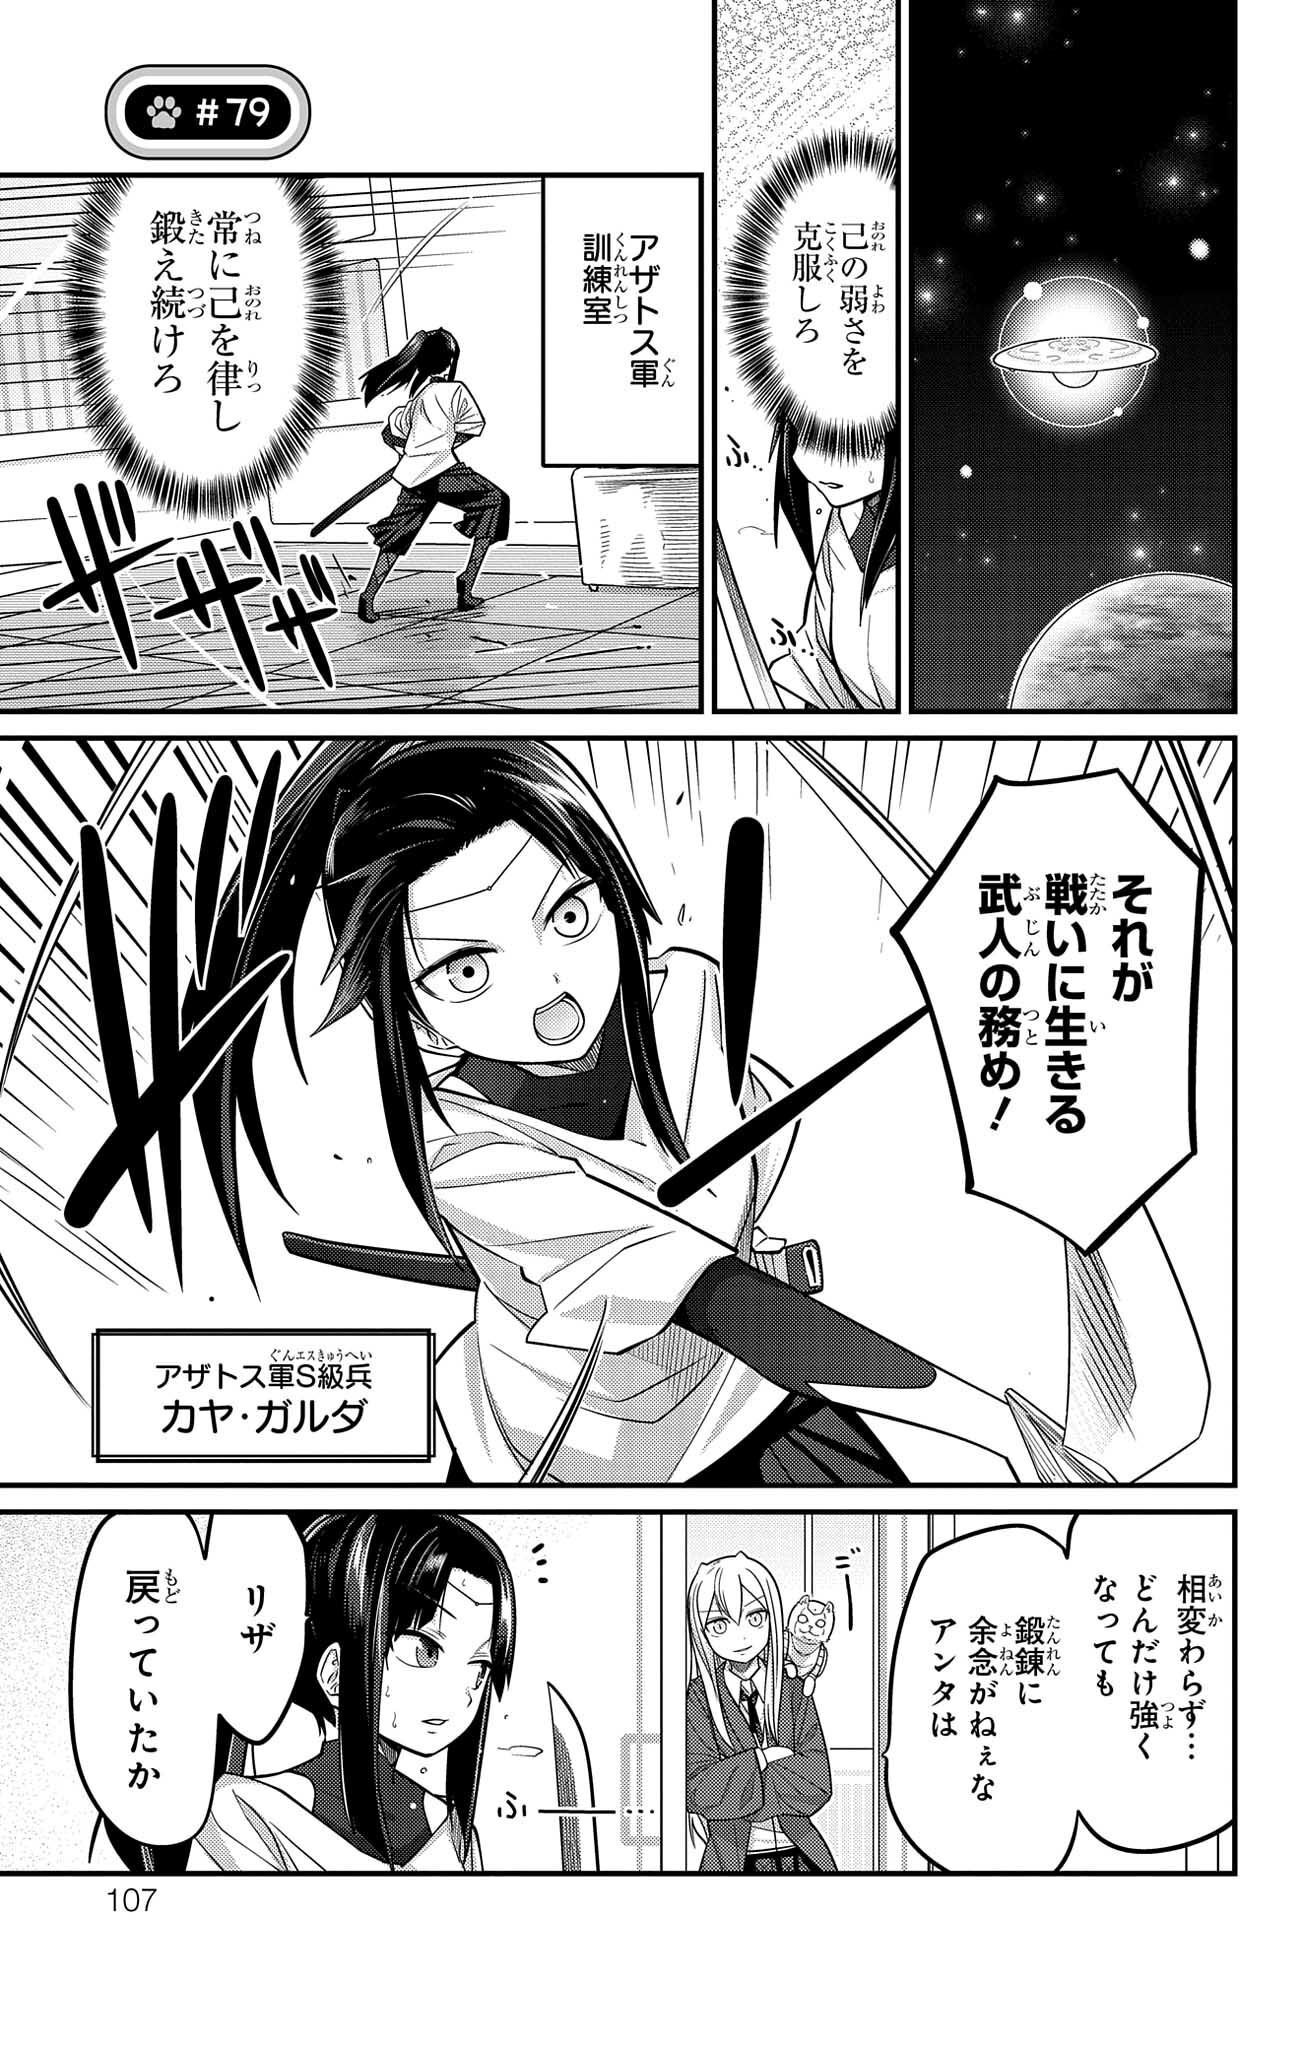 Kawaisugi Crisis - Chapter 79 - Page 1